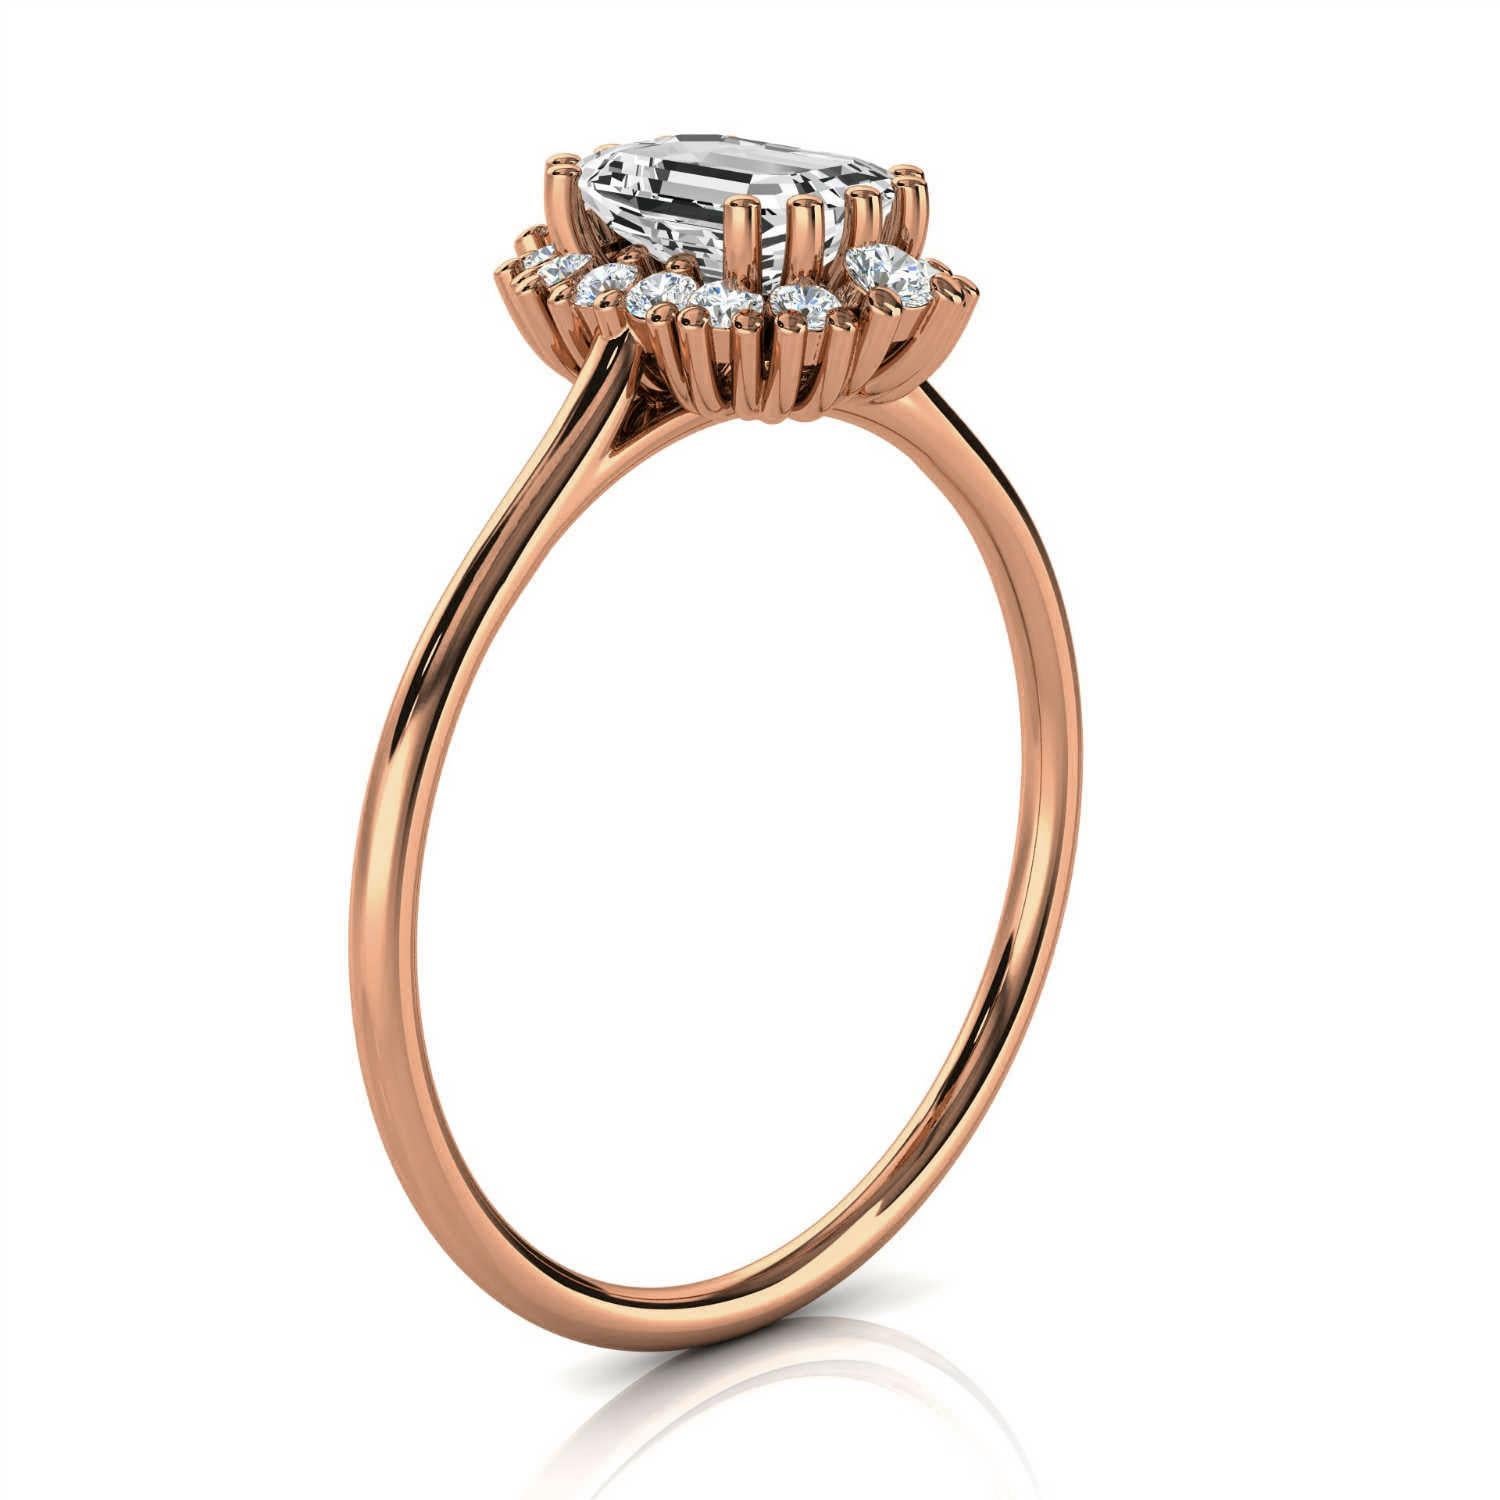 Dieser zierliche, handgefertigte, erdige und organisch gestaltete Ring ist mit einem 1/2-Karat-Diamanten in Smaragdform besetzt. Vierzehn (14) runde Diamanten bilden einen floralen Cluster-Halo auf einem 1,2 mm breiten Schaft und unterstreichen den